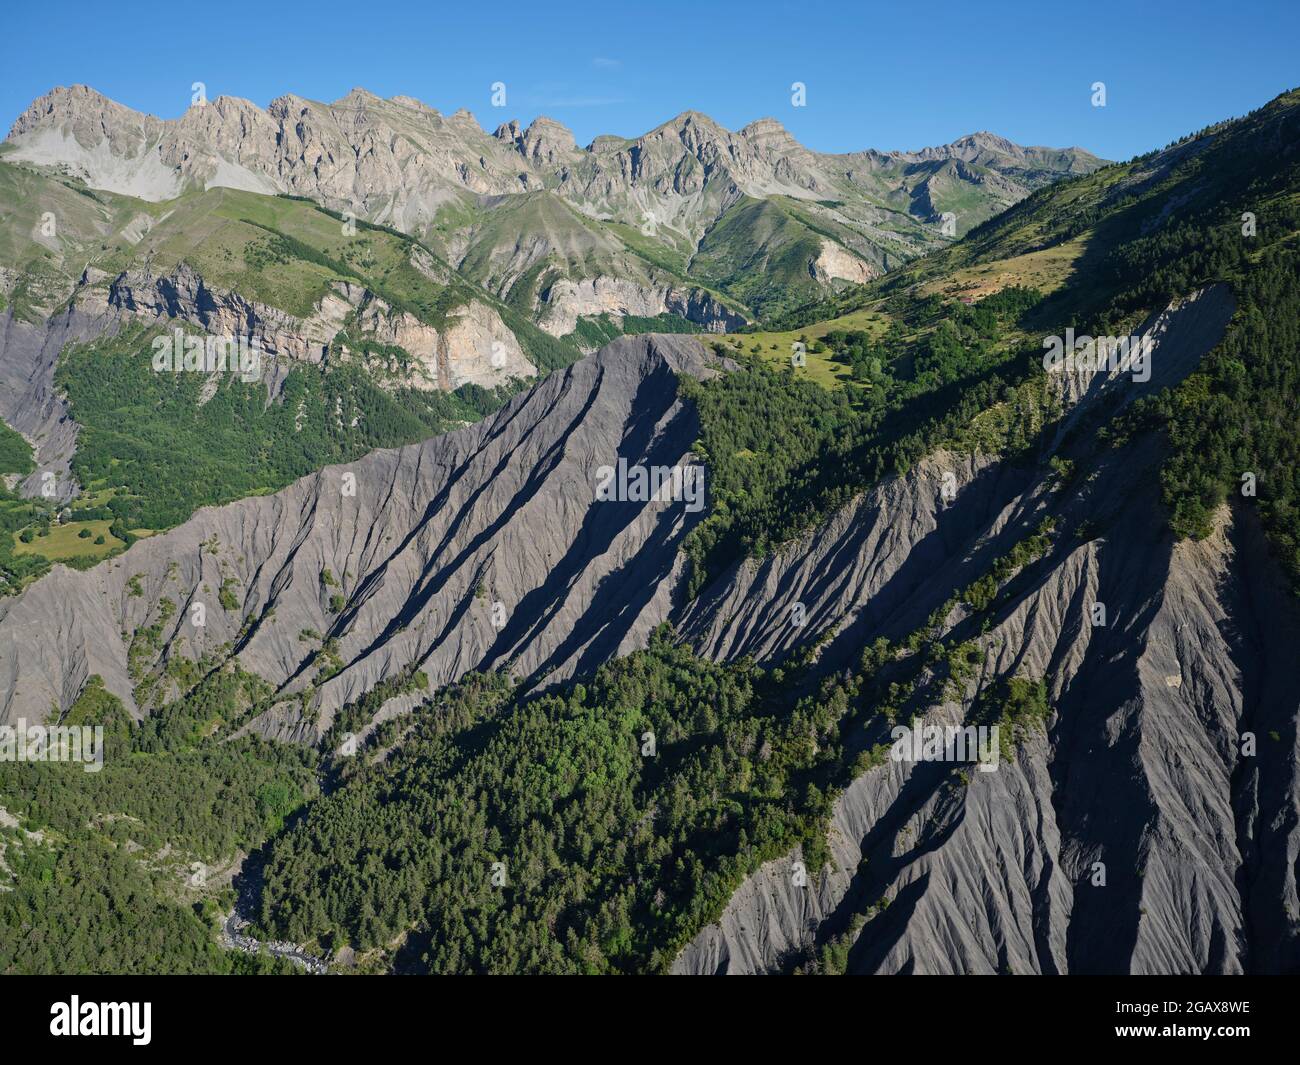 LUFTAUFNAHME. Landschaft aus Schluchten und felsigen Berggipfeln in der Nähe des Dorfes Entraunes; das Tor zum Mercantour Park. Alpes-Maritimes, Frankreich. Stockfoto